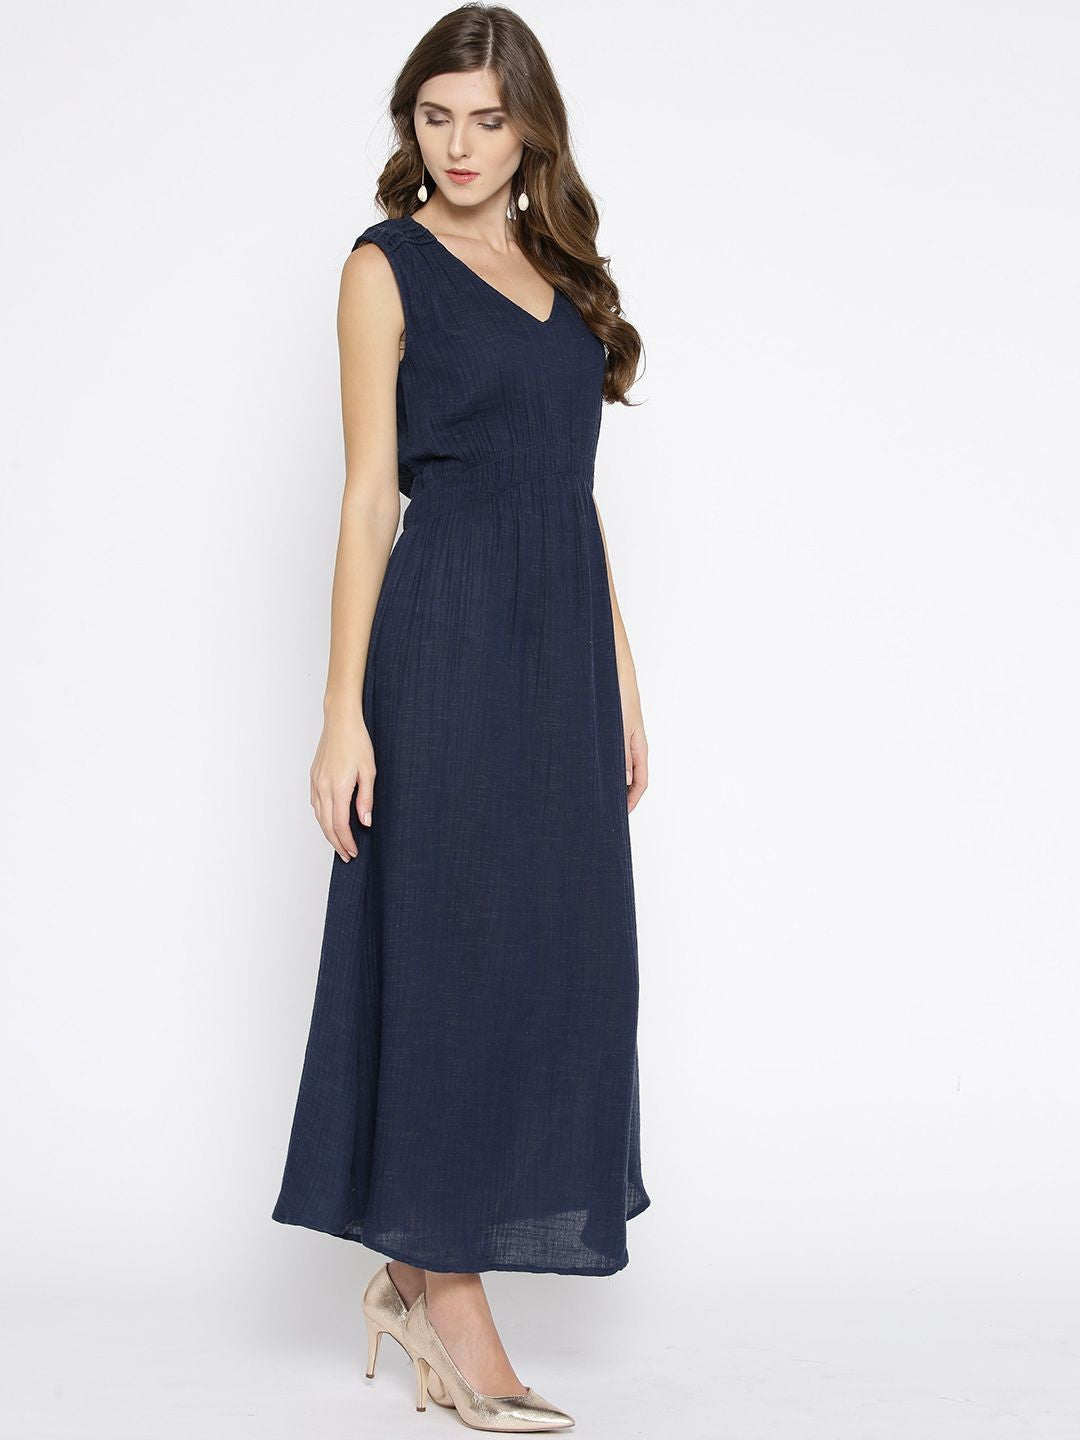 Sleeveless Navy Blue Maxi Dress